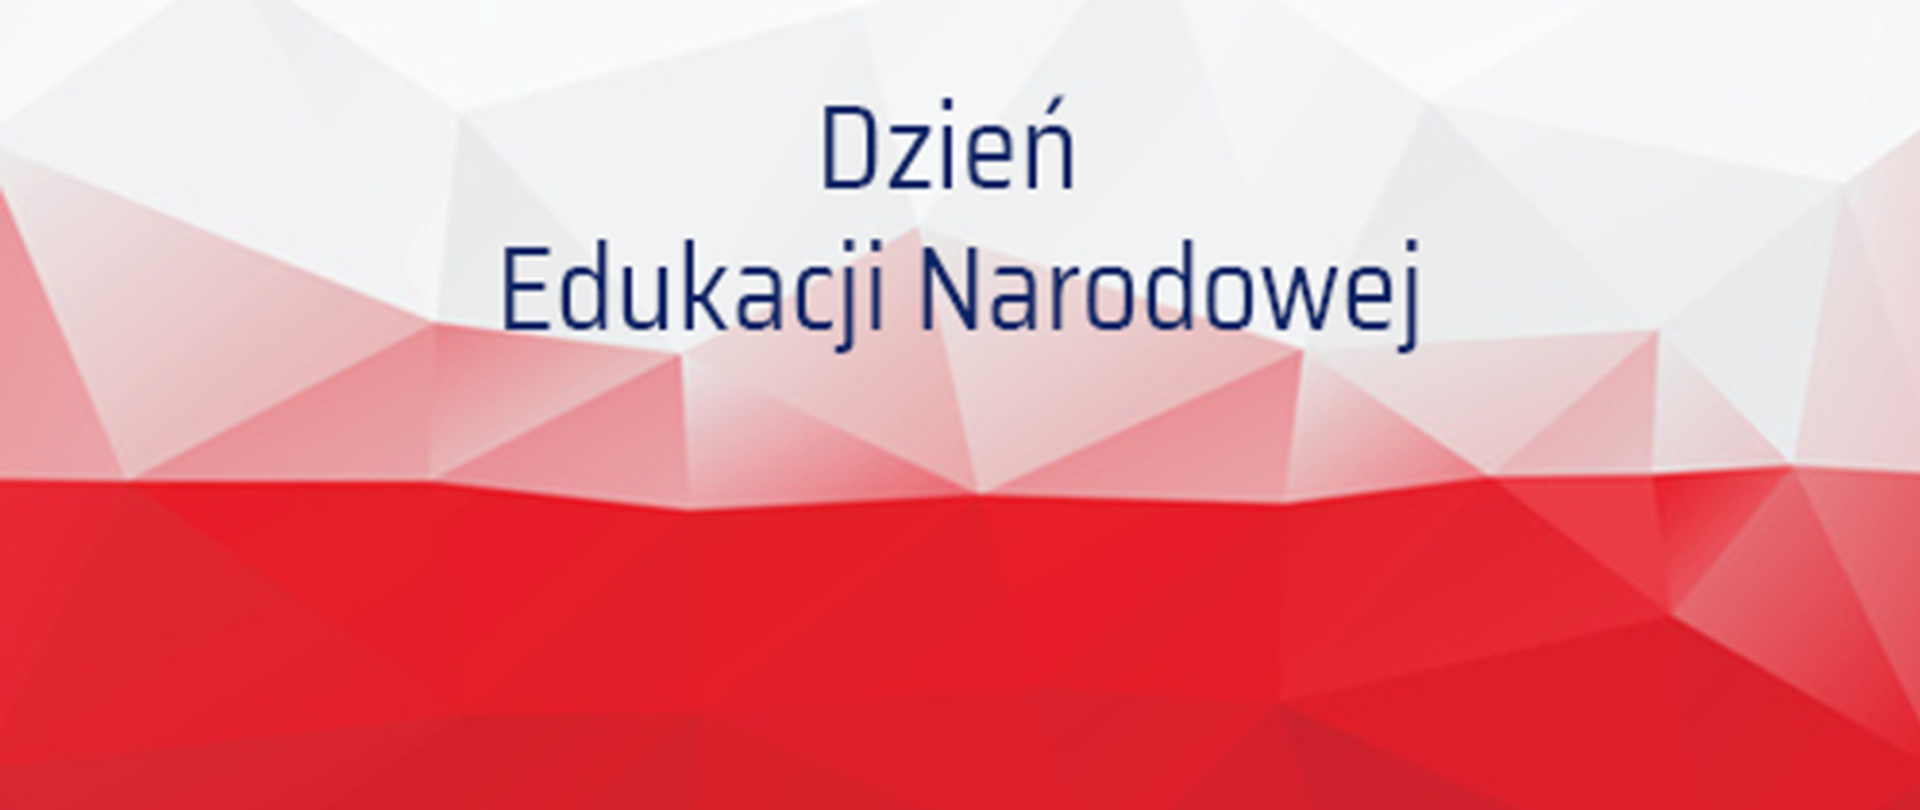 Flaga polski składająca się z trójkątów o różnym nasyceniu kolorów. Na fladze napis Dzień Edukacji Narodowej.